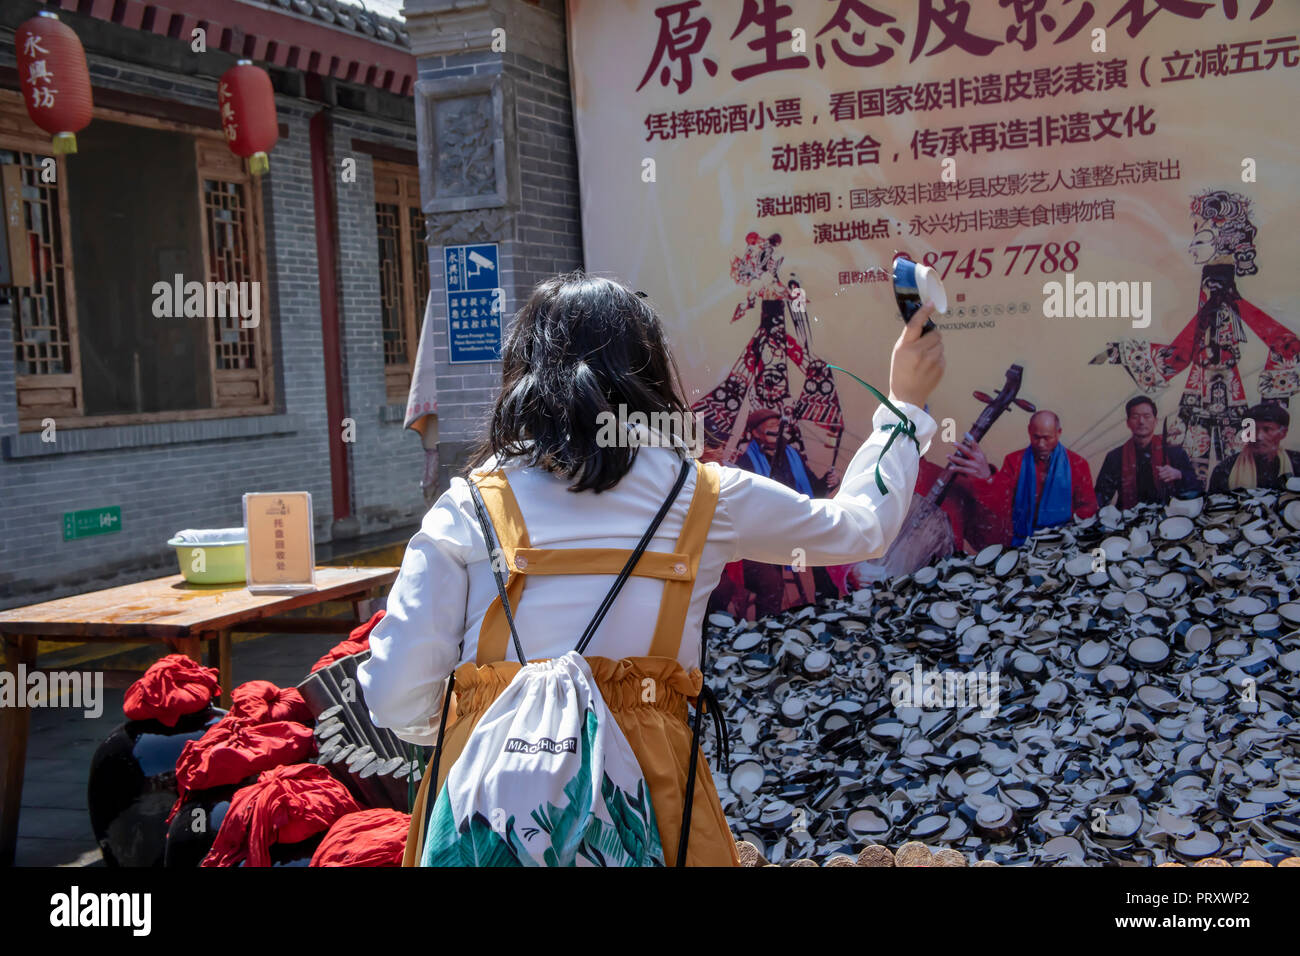 Xi'an, Shaanxi Province, Cina - 7 Settembre 2018 : Tourist bere il vino di riso provenienti dalla Cina tazze e smashing piatto per allontanare gli spiriti maligni in aperta ai Foto Stock